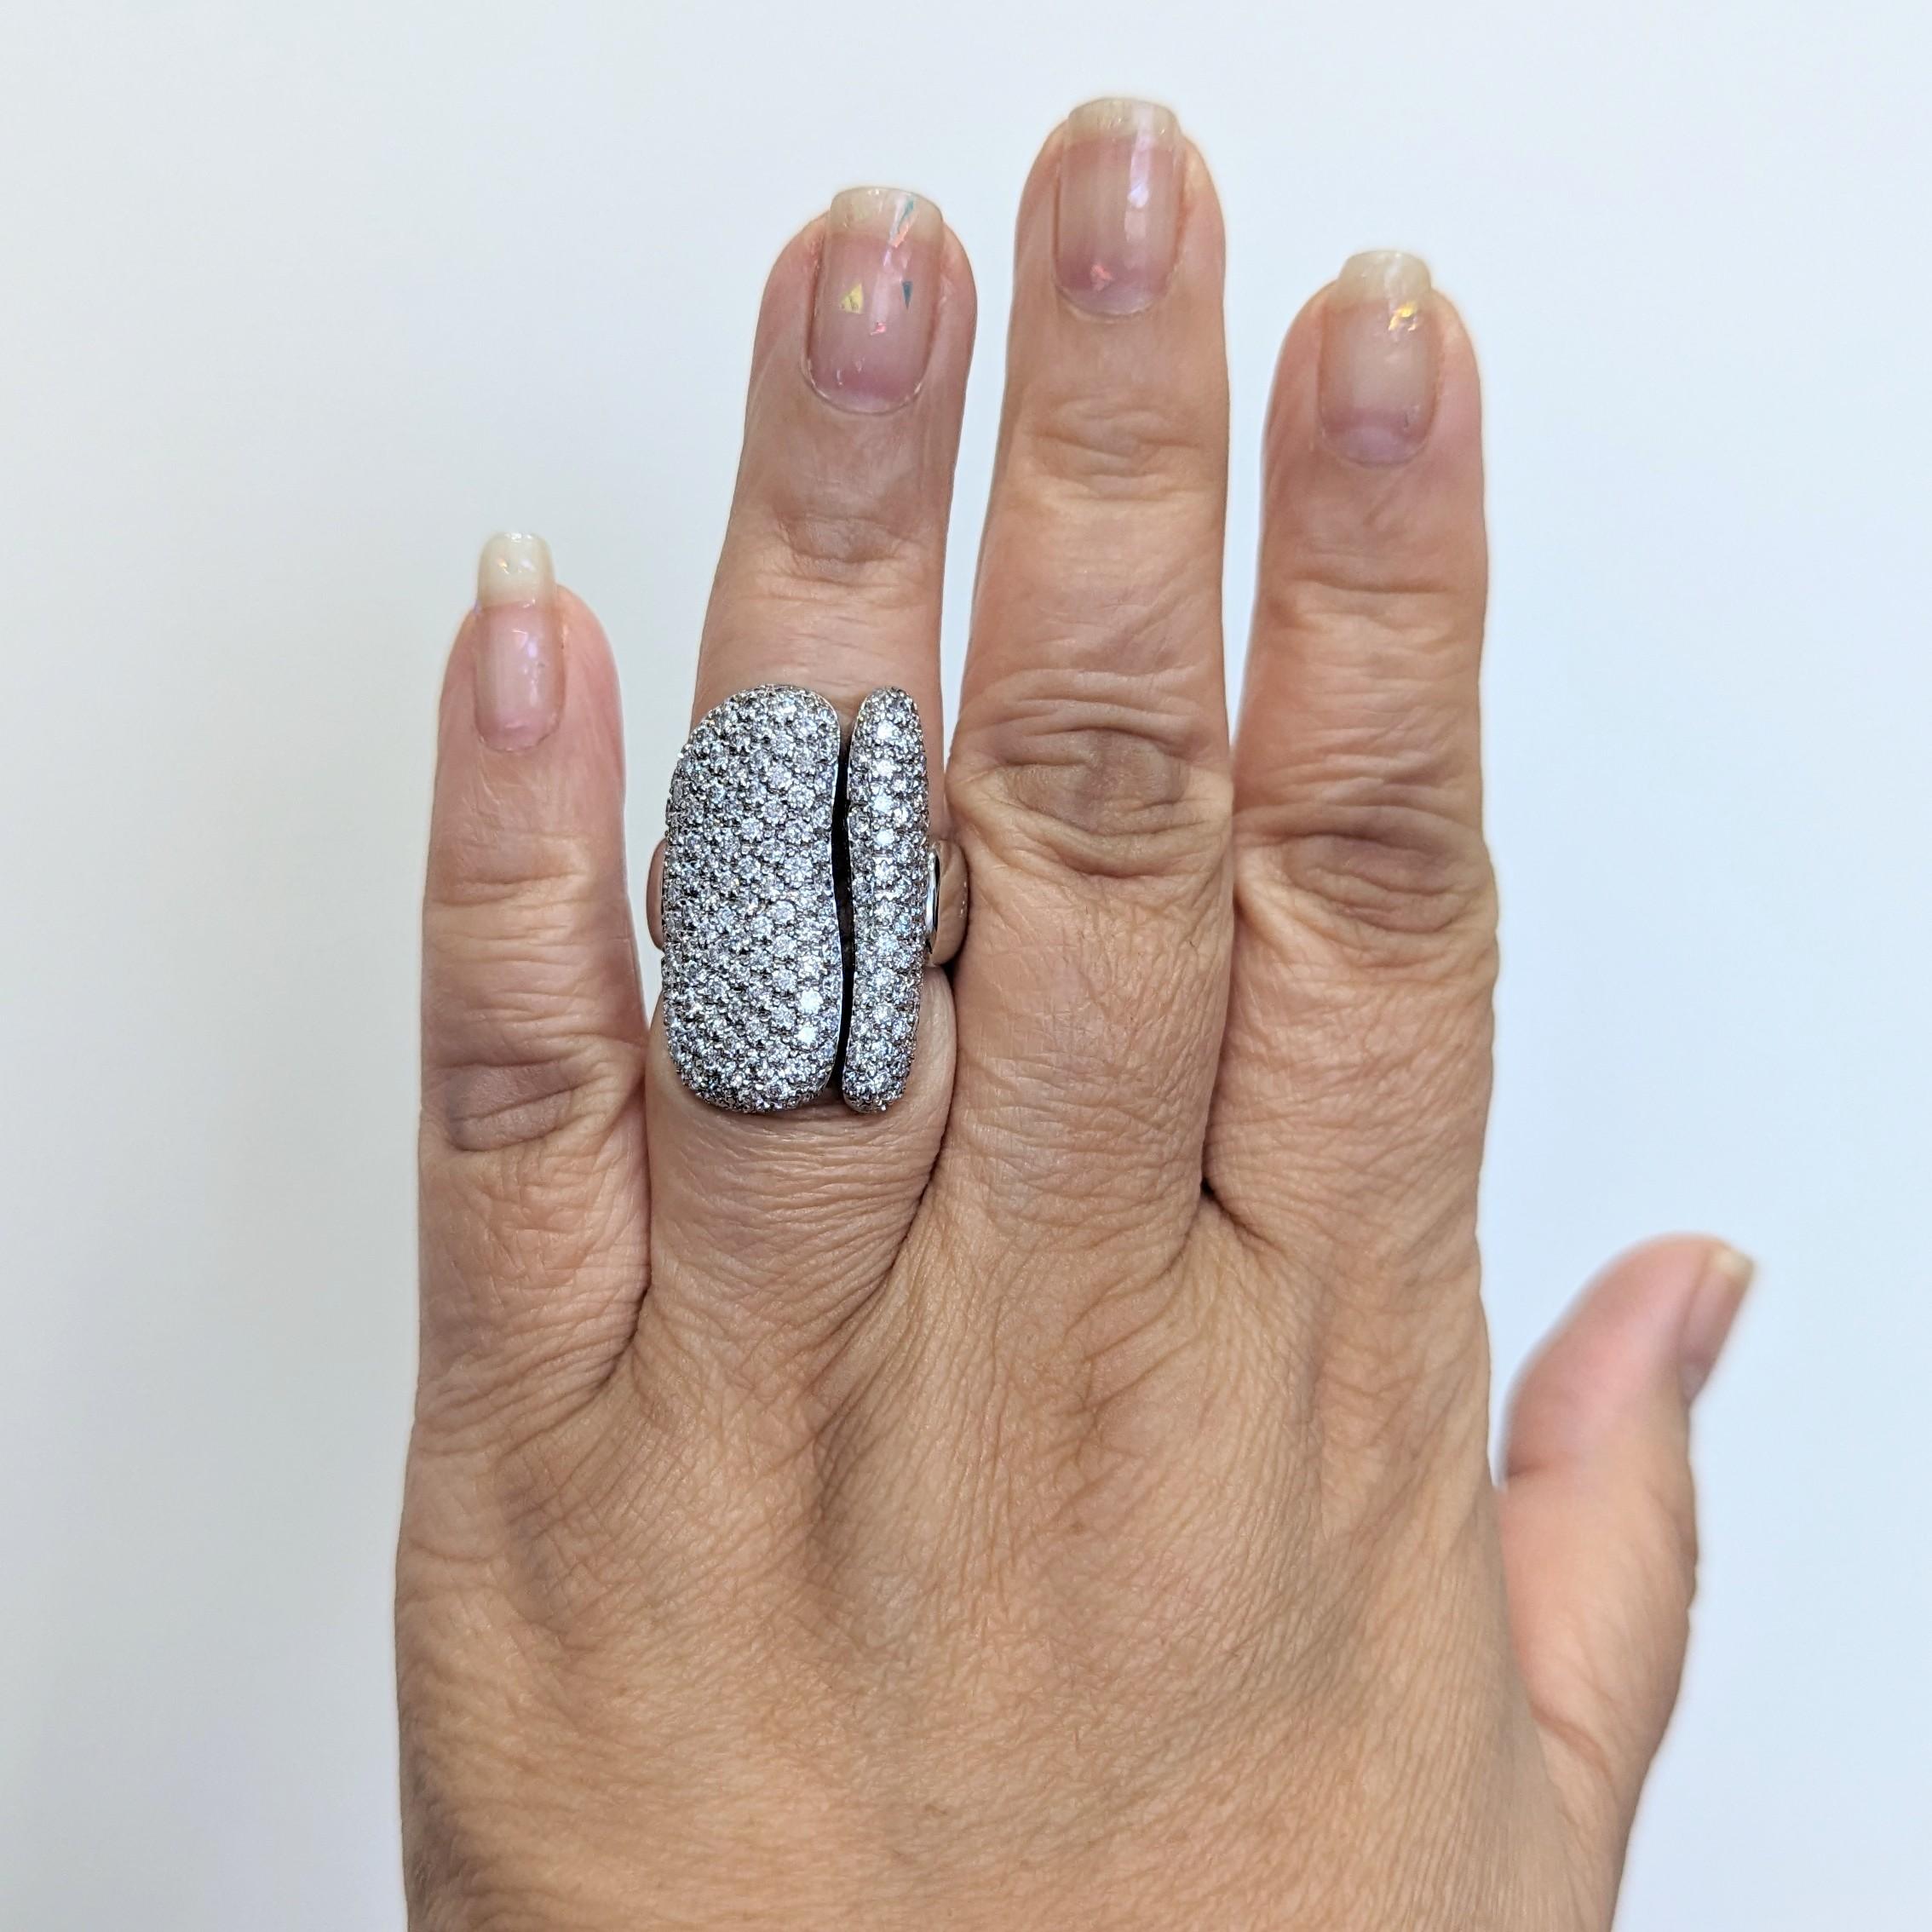 Schöne 3,00 ct. gute Qualität, weiß, und hellen Diamanten Runden in diesem Pflaster Design Anwesen Antonini Ring.  Handgefertigt aus 18 Karat Weißgold.  Ringgröße 7,25.